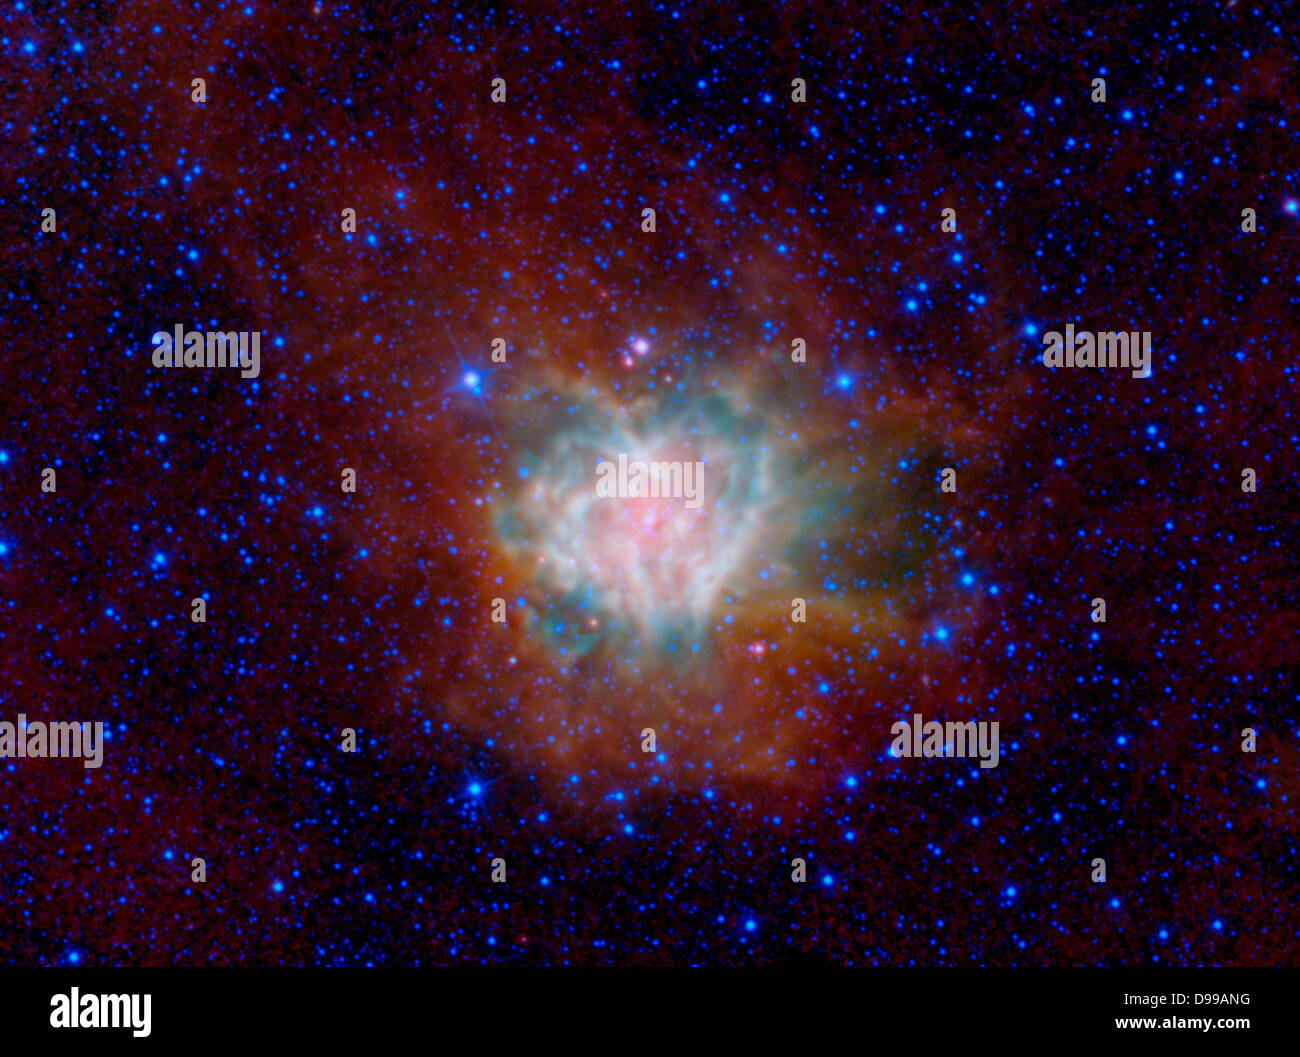 La nebulosa Cocoon está representado en esta imagen de la NASA del sabio. Esta nube de polvo y gas, catalogada como IC 5146 y situada en la constelación de Cygnus, está envuelto en una oscura nube de polvo llamada Barnard 168. Dentro de este capullo de polvo y gas, se están formando nuevas estrellas y comienza a surgir en el medio silvestre. Foto de stock